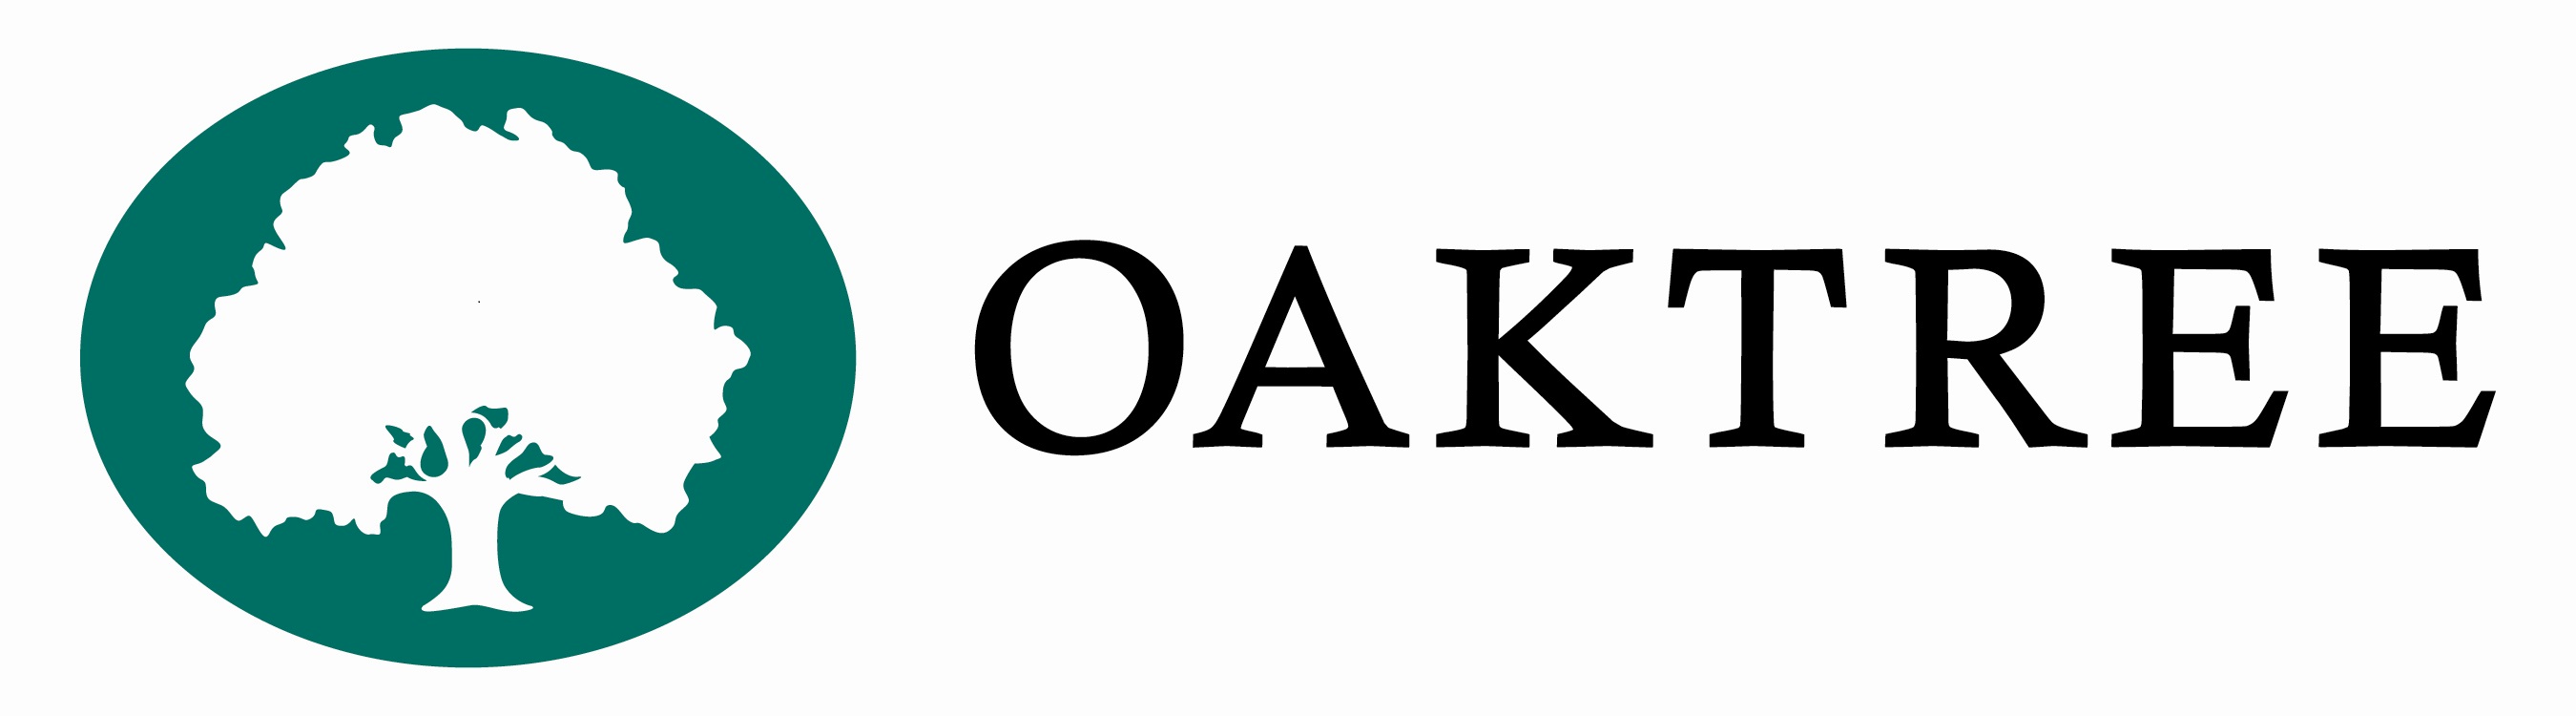 Oaktree Fishery